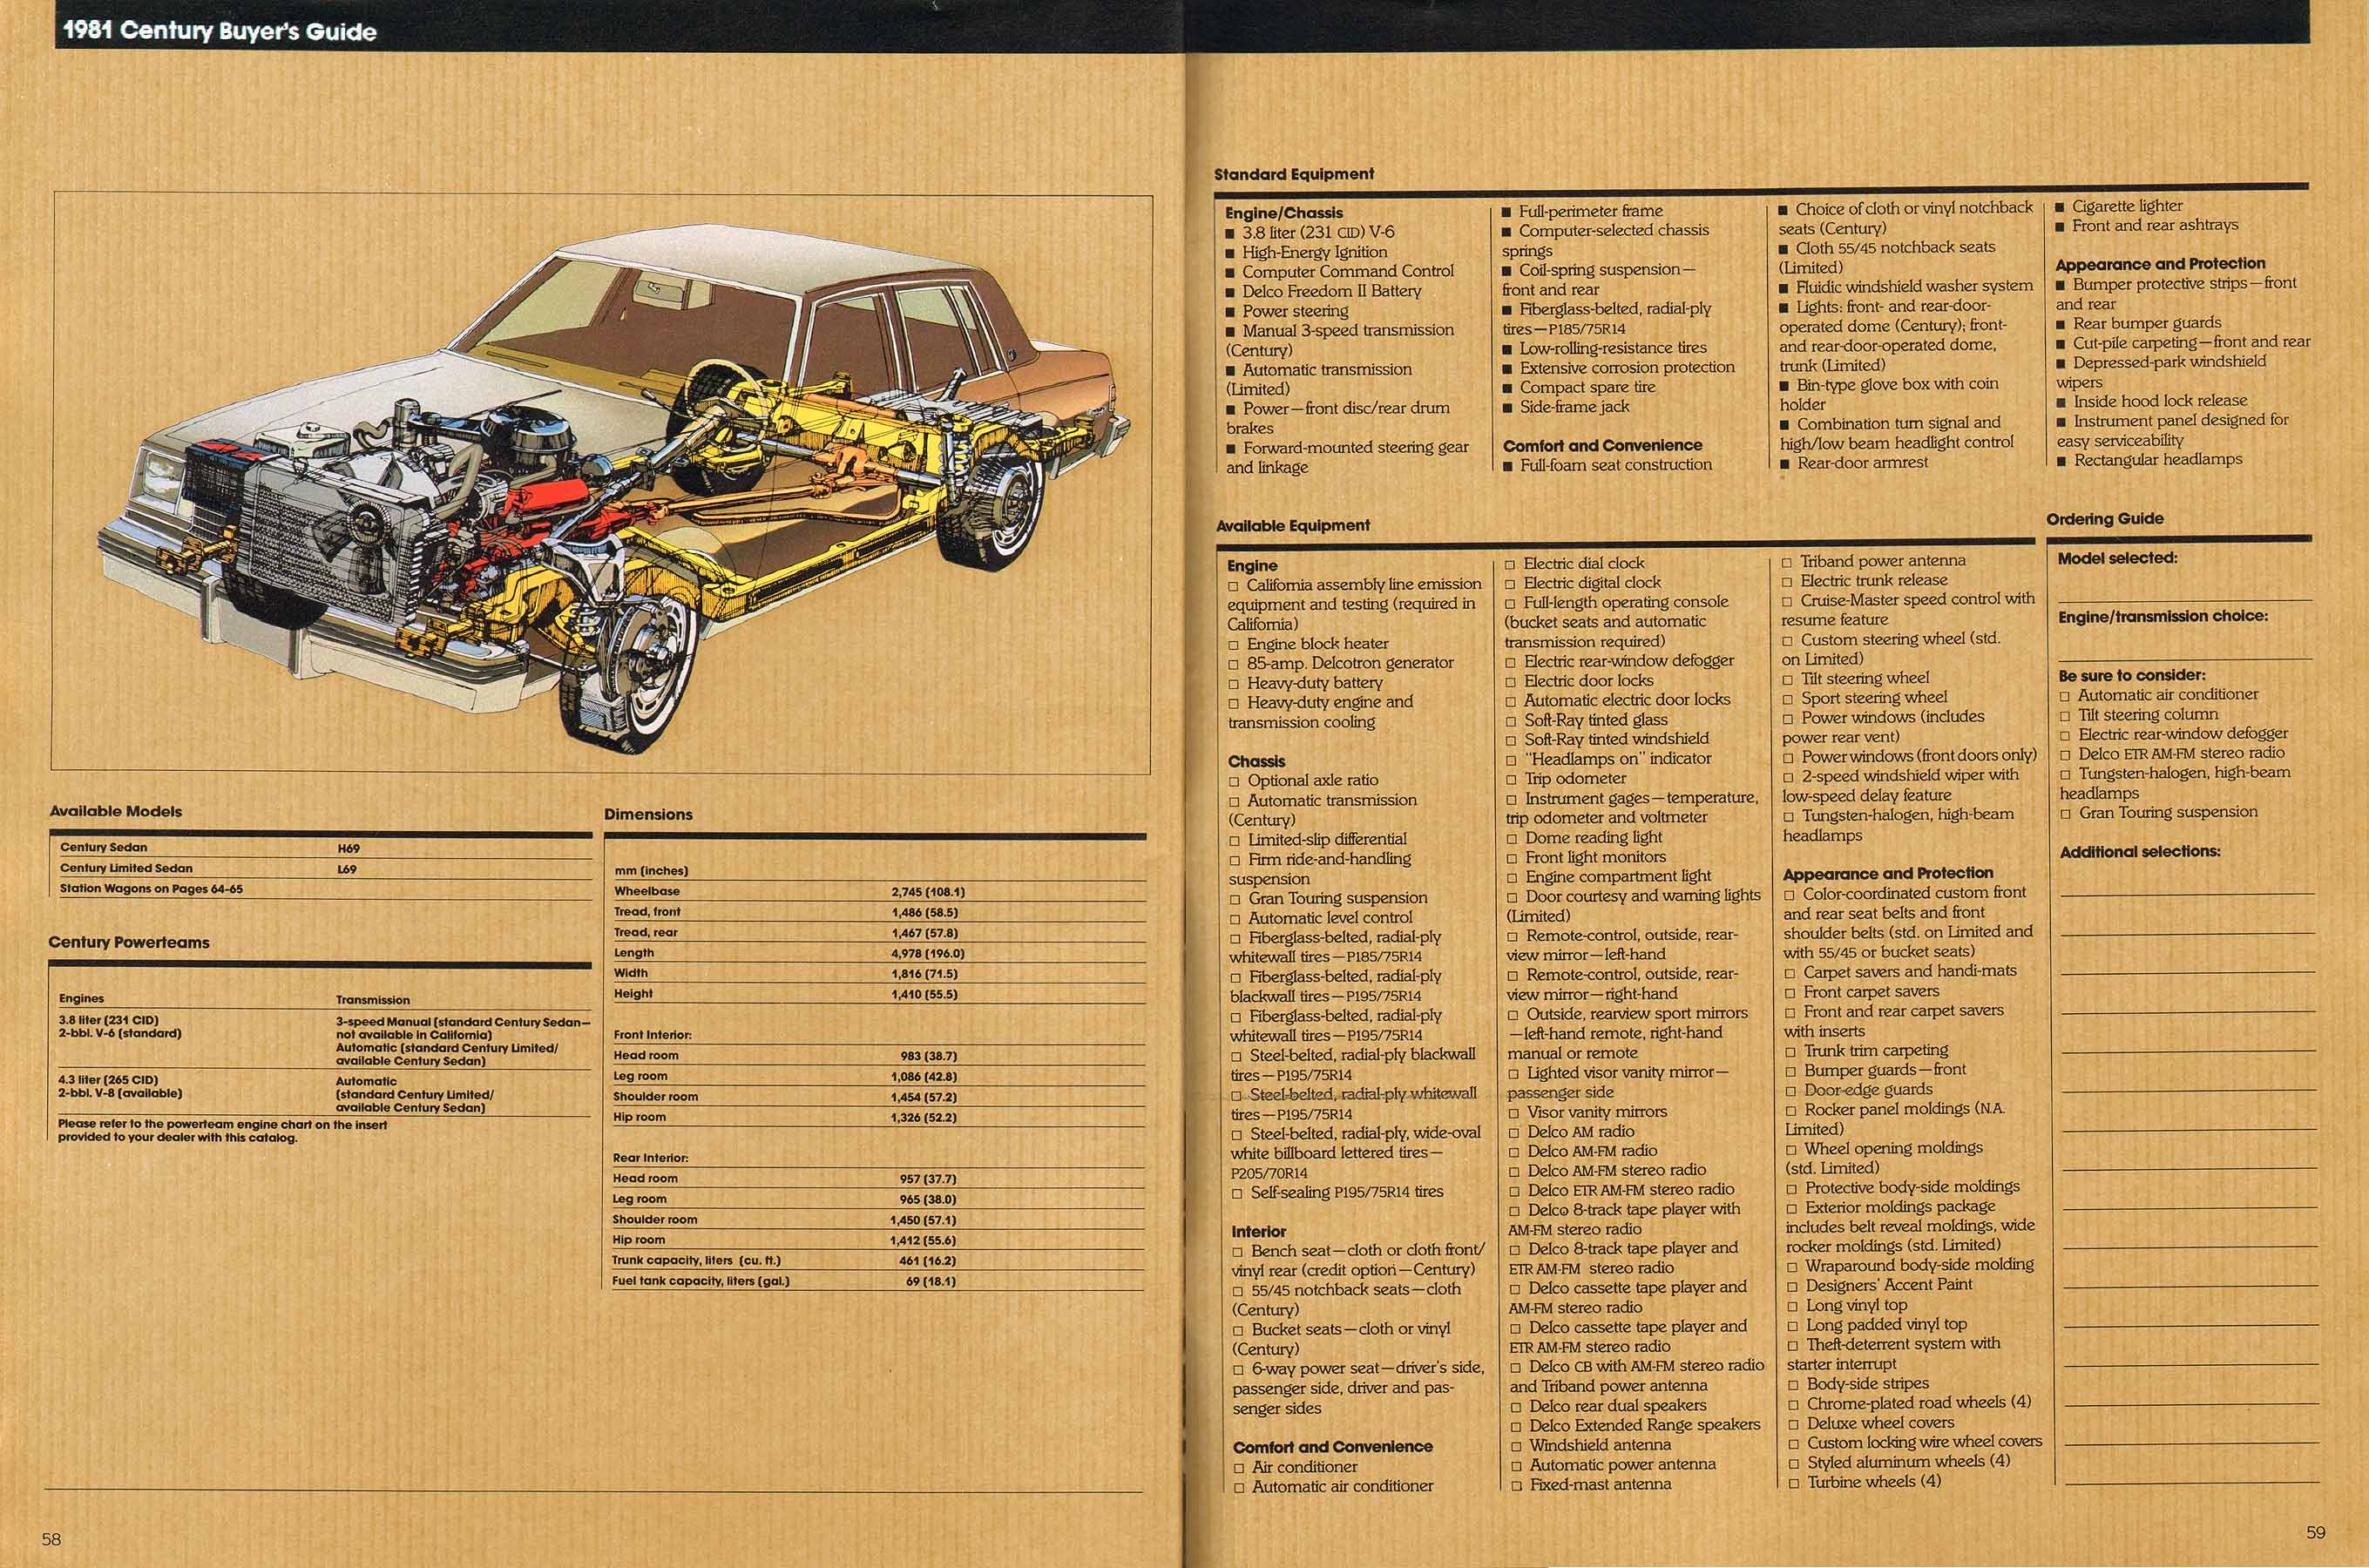 1981 Buick Full Line Prestige-58-59